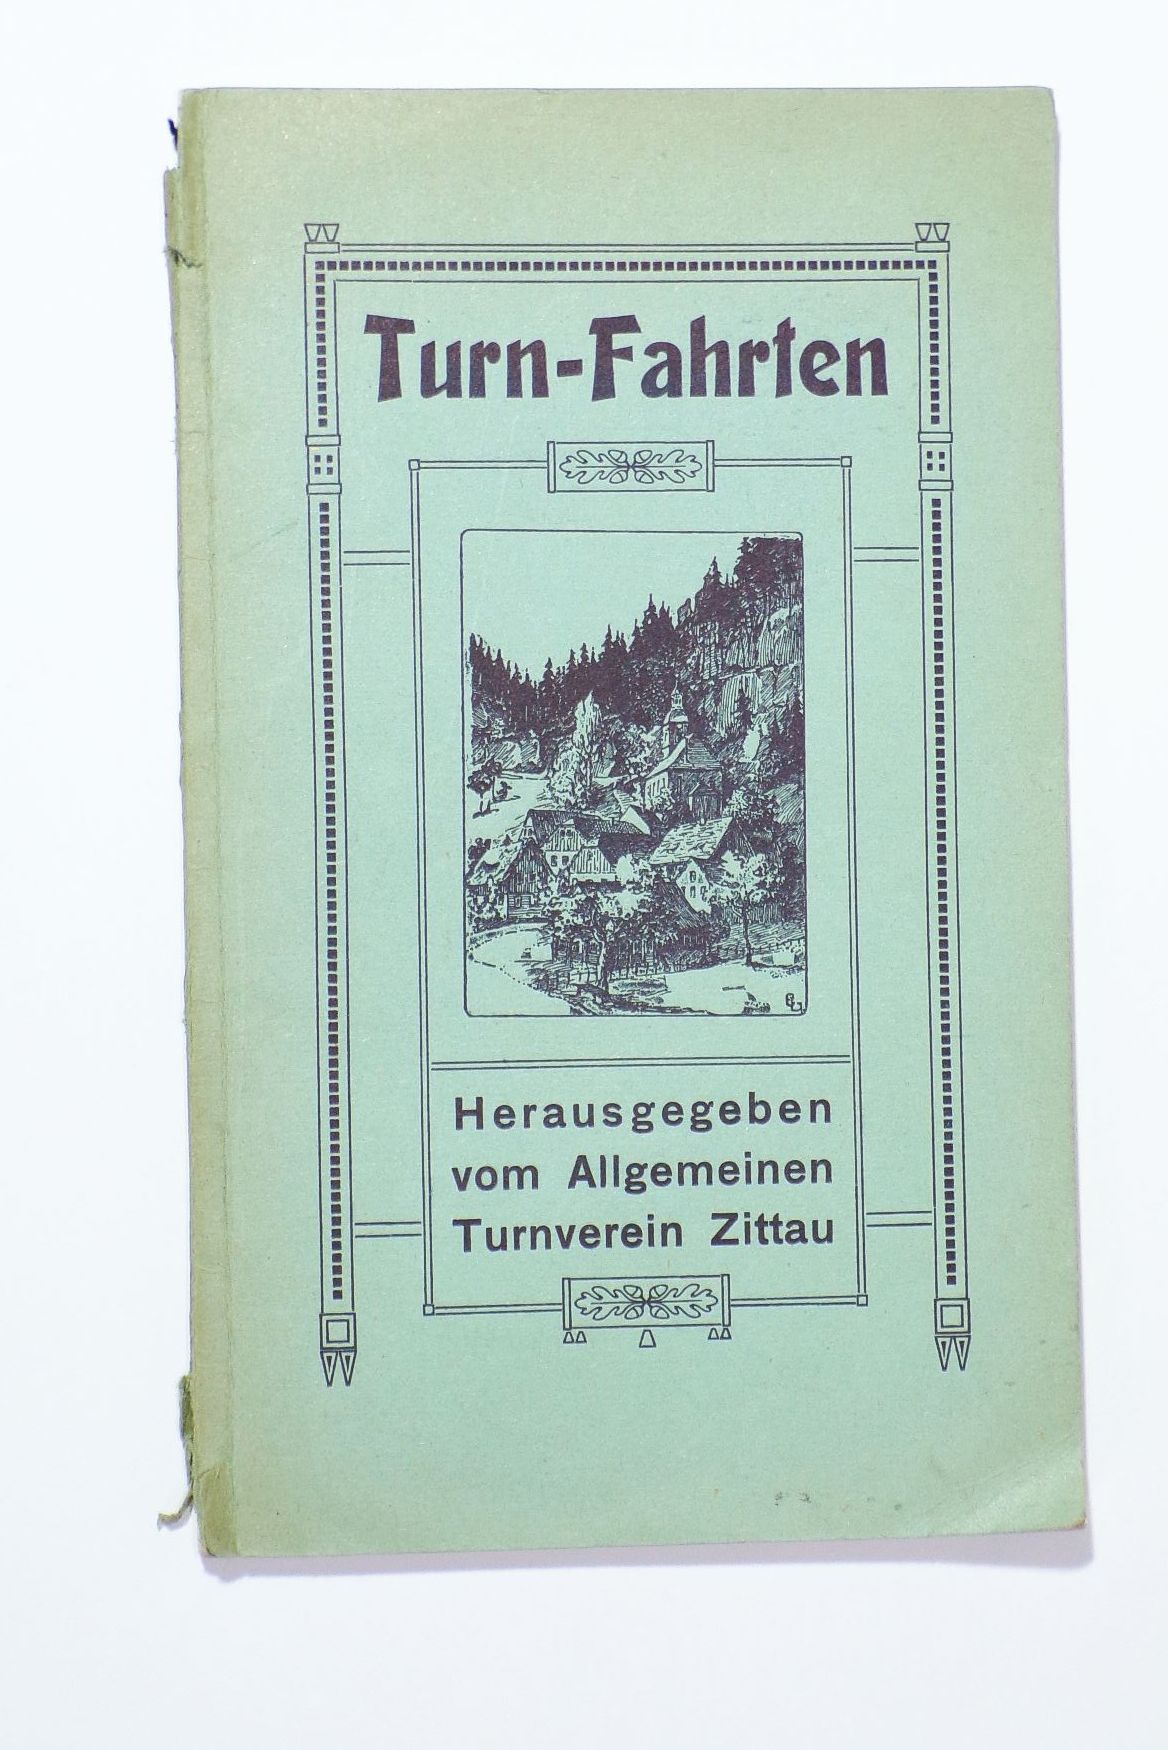 Turn Fahrten Turnverein Zittau um 1910 Oberlausitz 